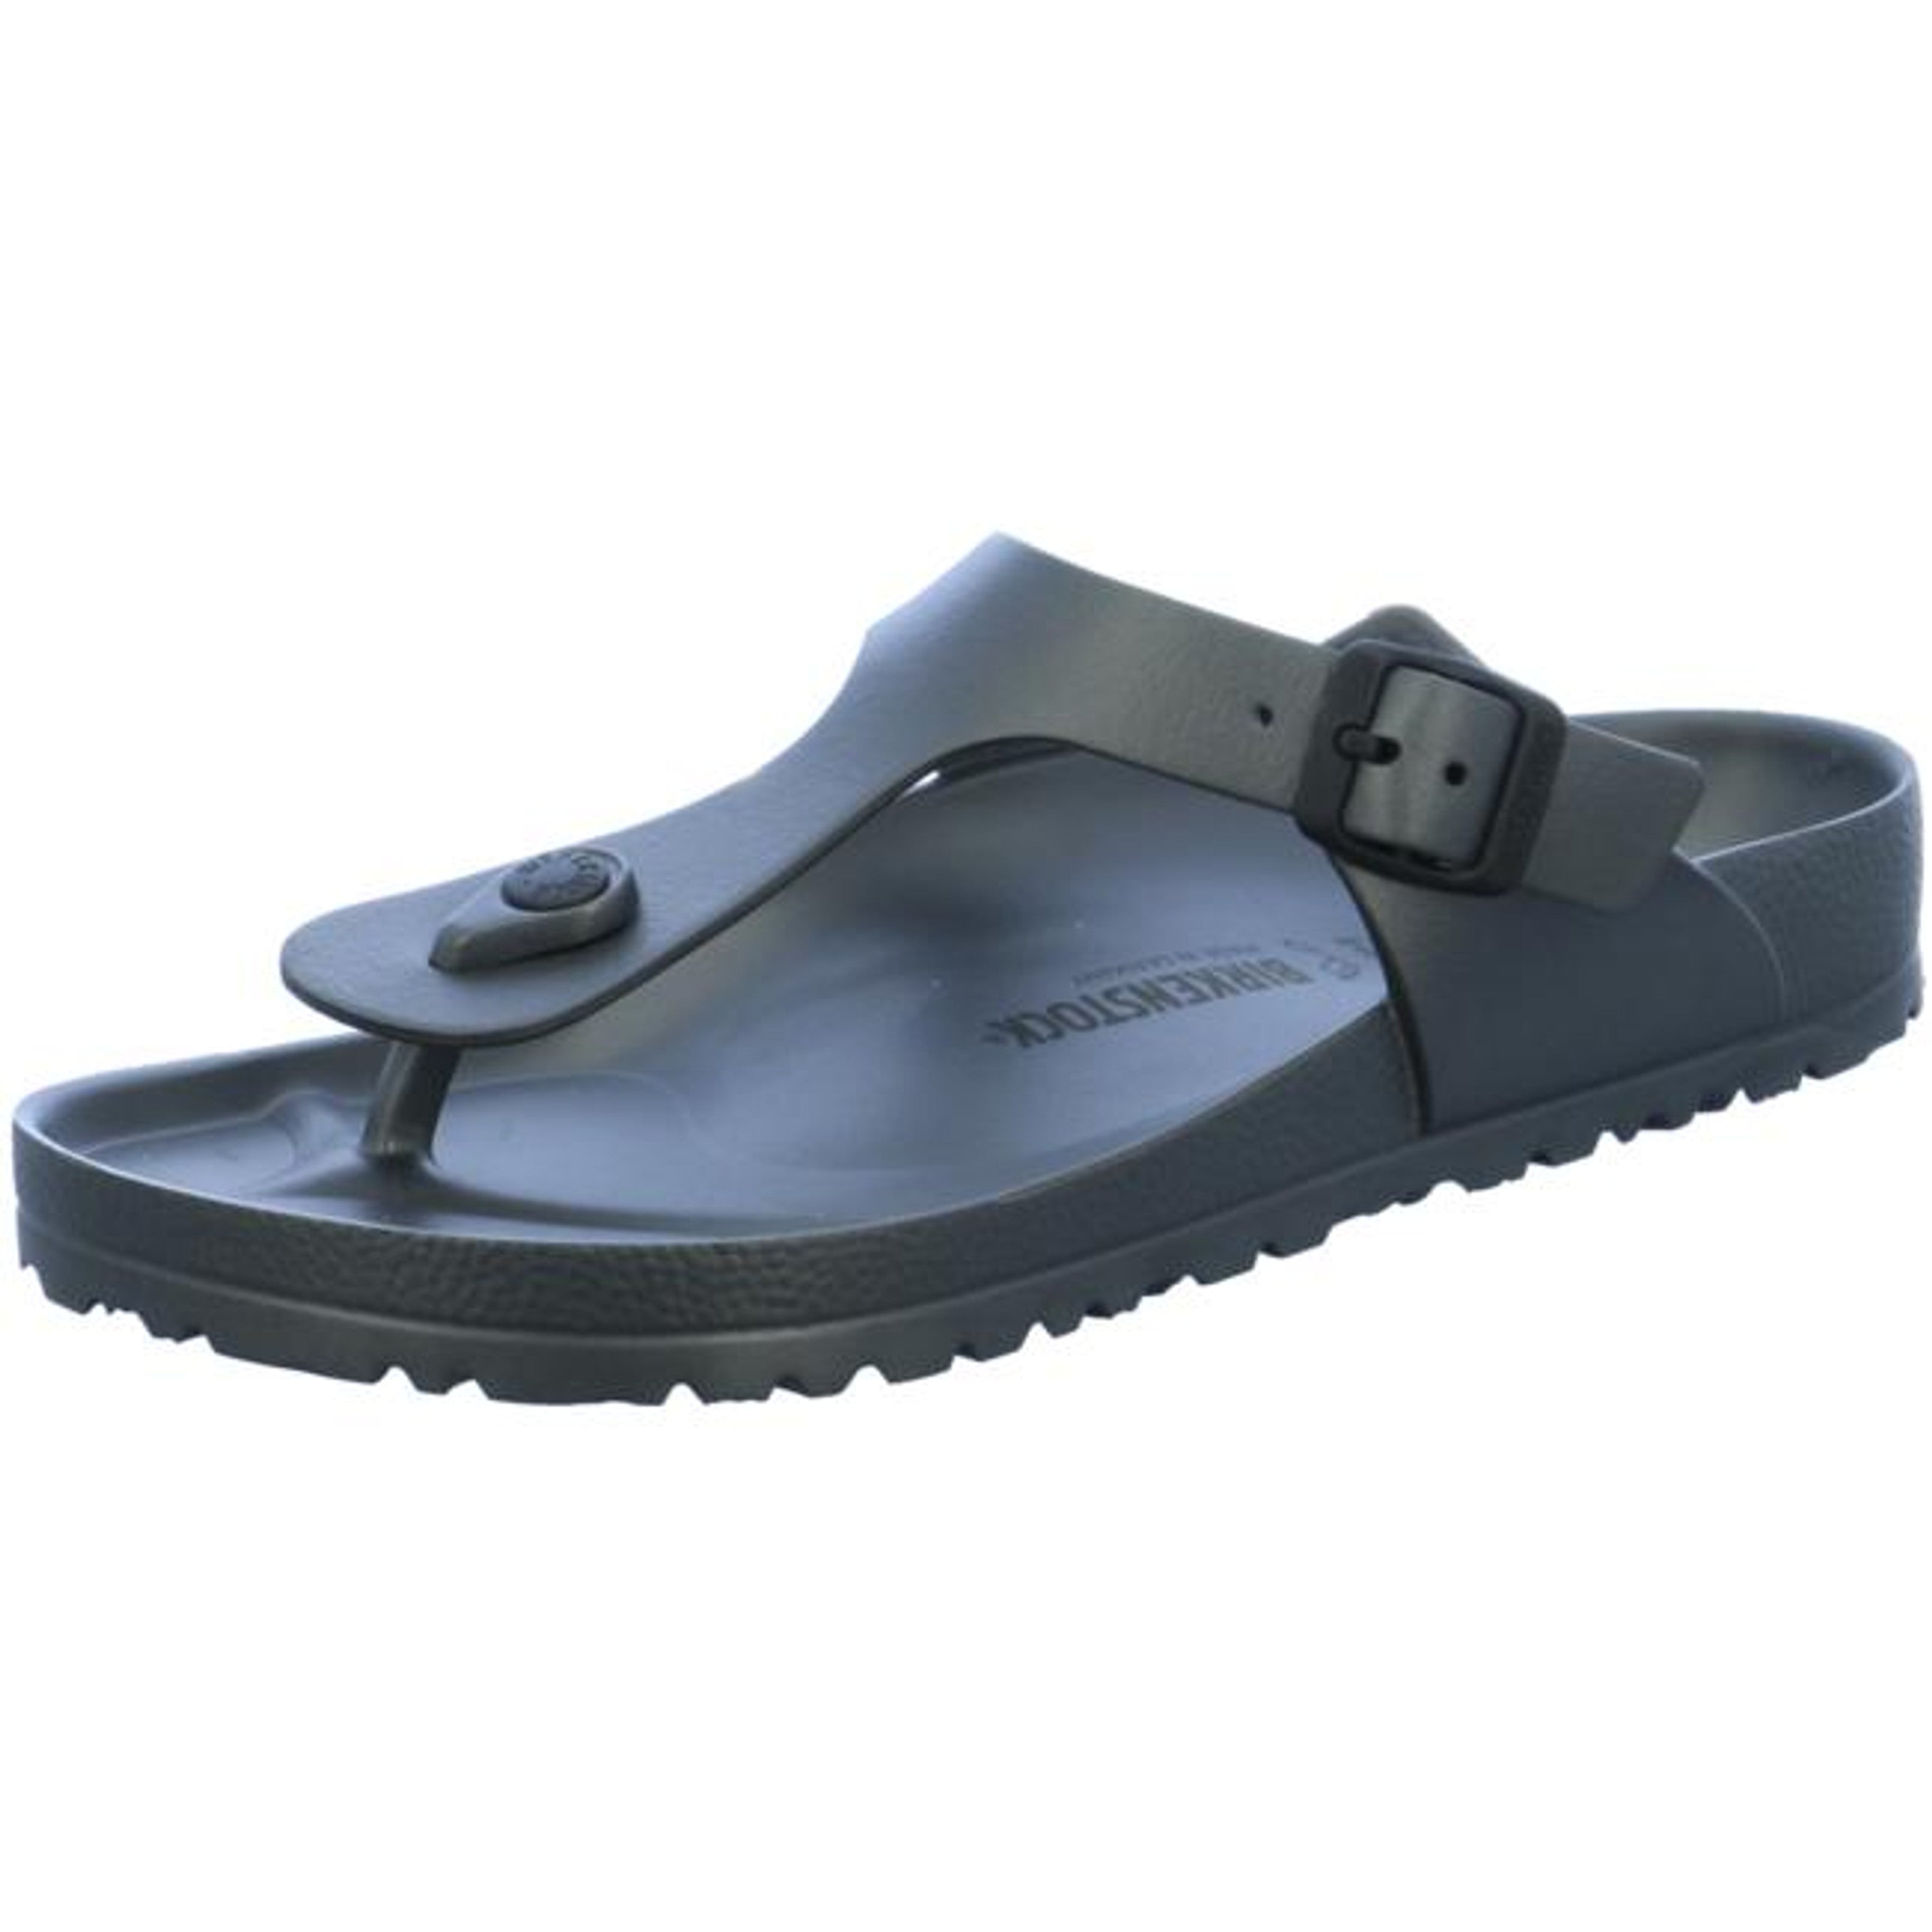 Birkenstock Gizeh Beach EVA Waterproof Slide Sandals Shoes Flip-Flops anthracite metallic regular - Bartel-Shop